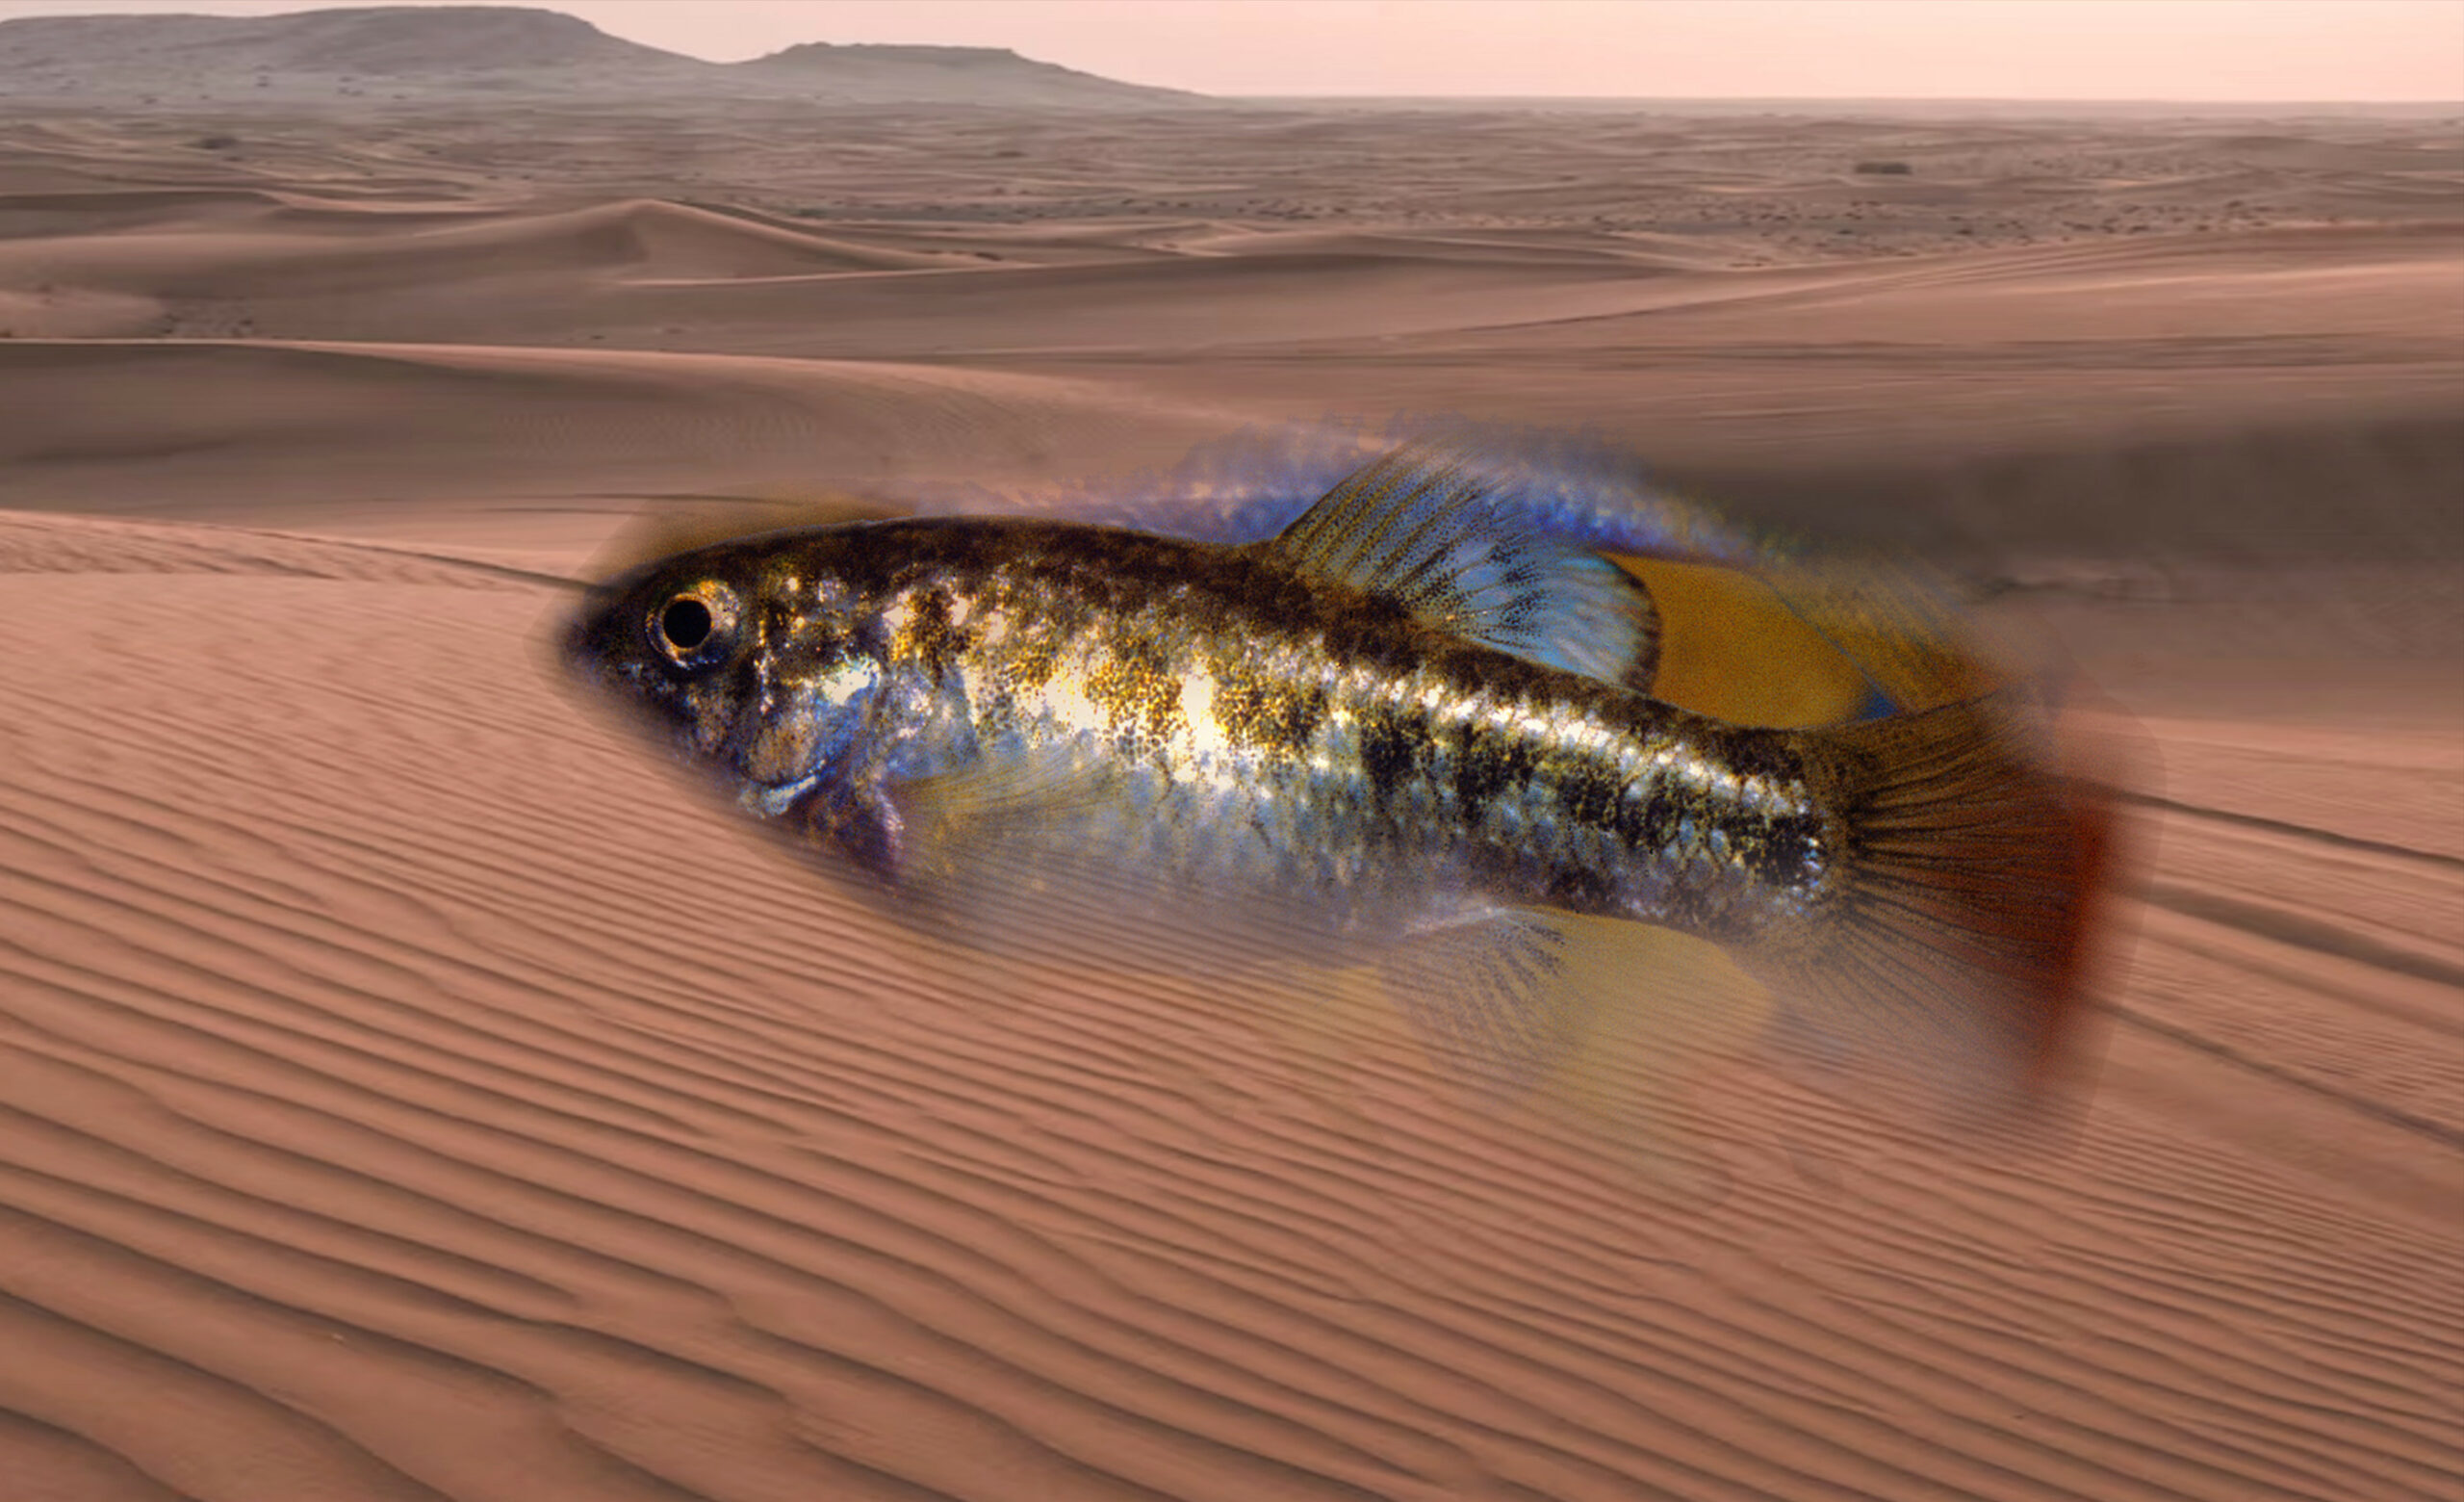 Woestijn Pupfish - Aangepast om te gedijen in de extreme omstandigheden van de woestijnen in het zuidwesten van Amerika.